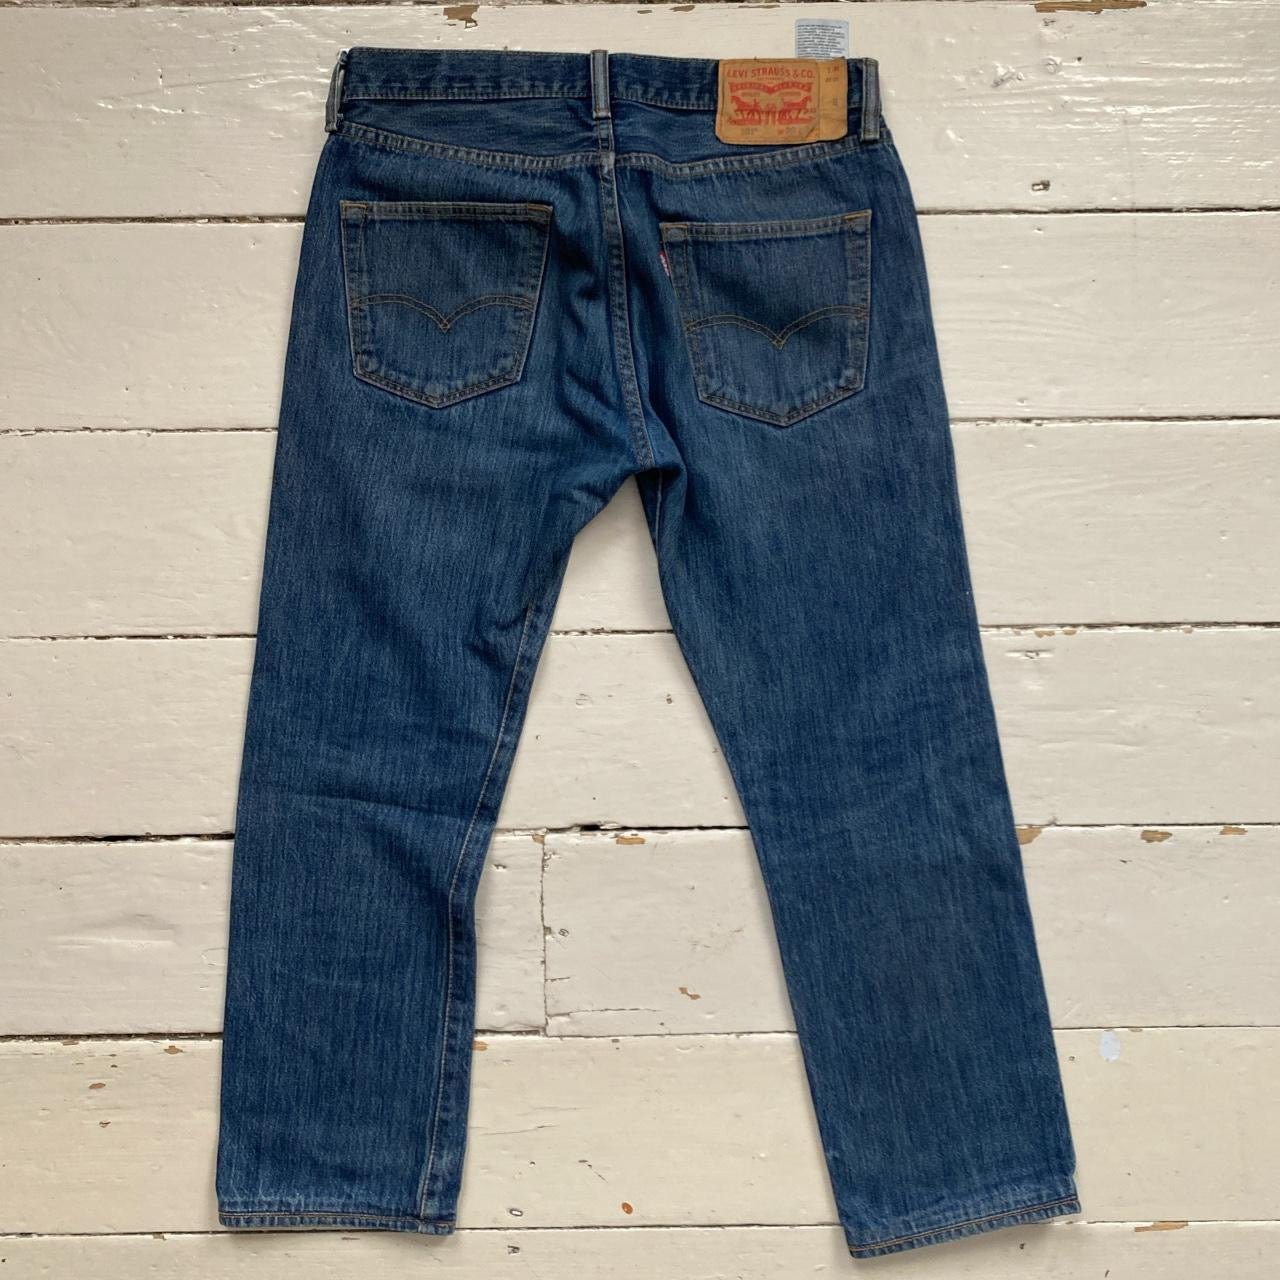 Levis 501 Blue Jeans (30/27)